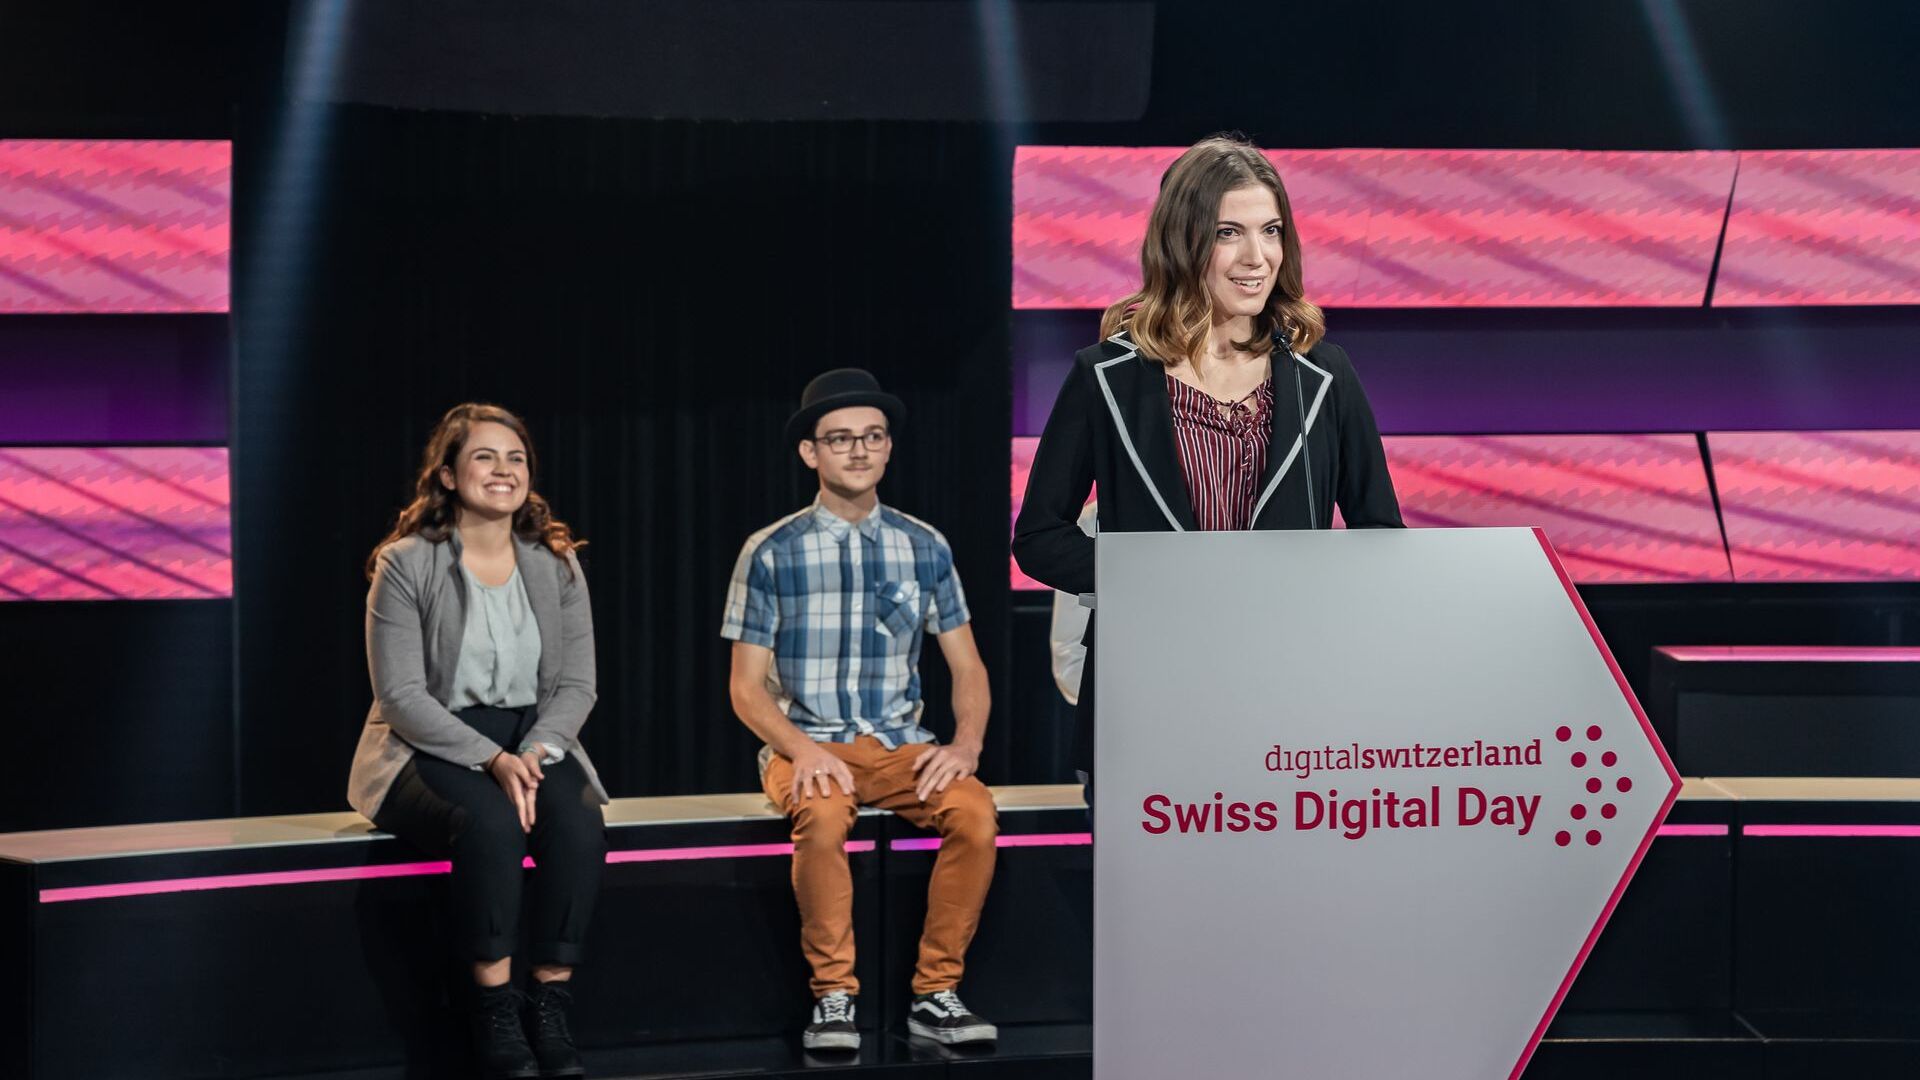 Alessandra Capurro è stata una finalista della graduatoria “NextGen Hero” ai “Digital Economy Award” 2021